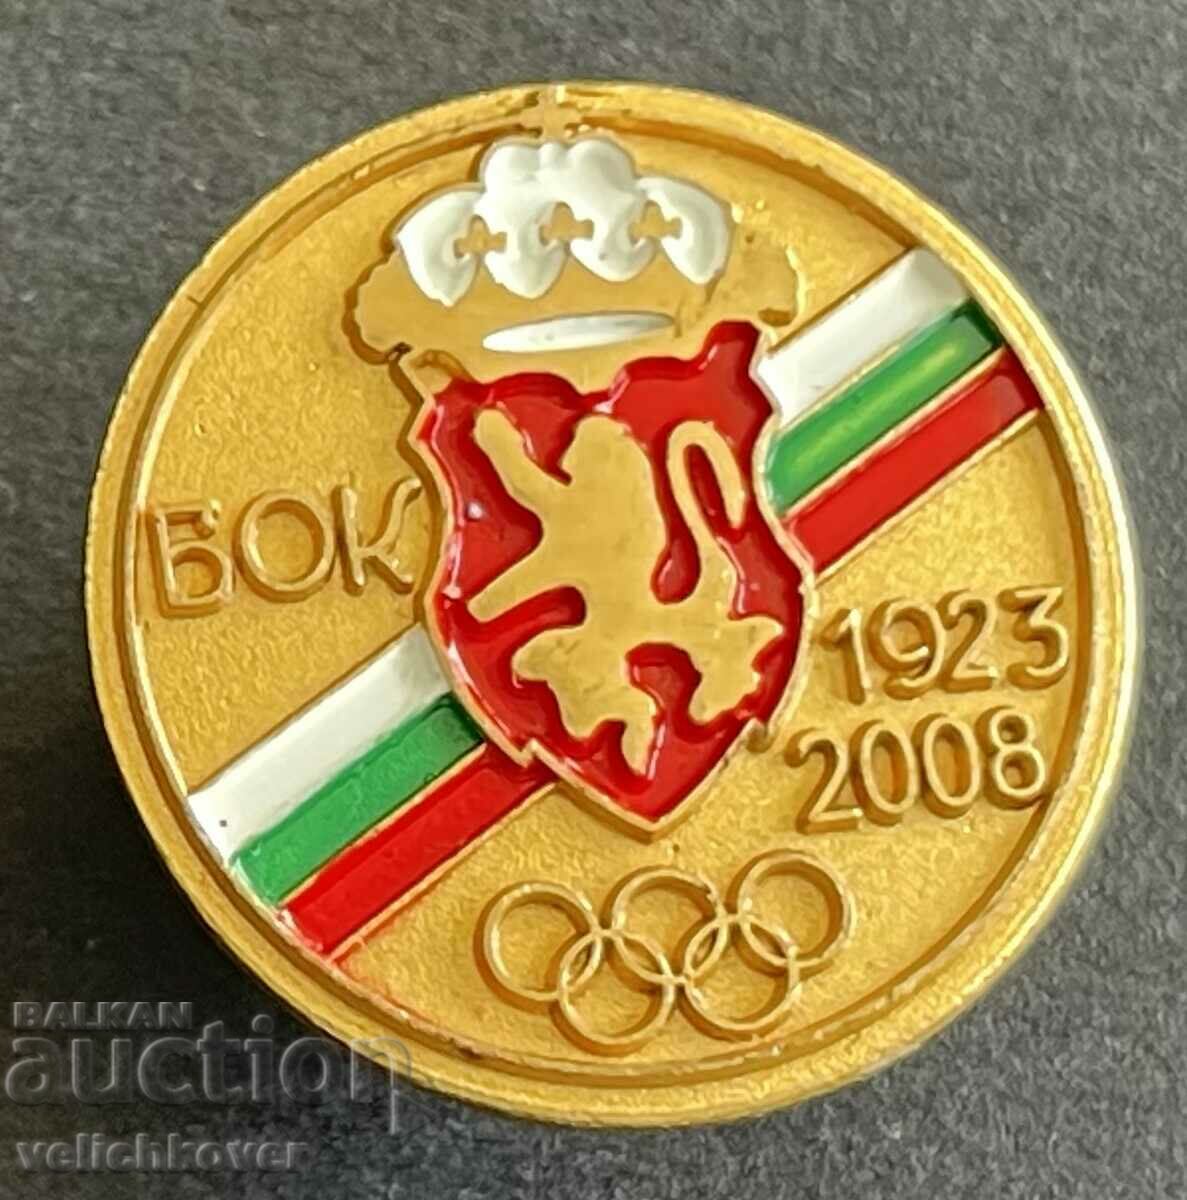 35457 България знак 85 БОК Български олимпийски комитет 2008